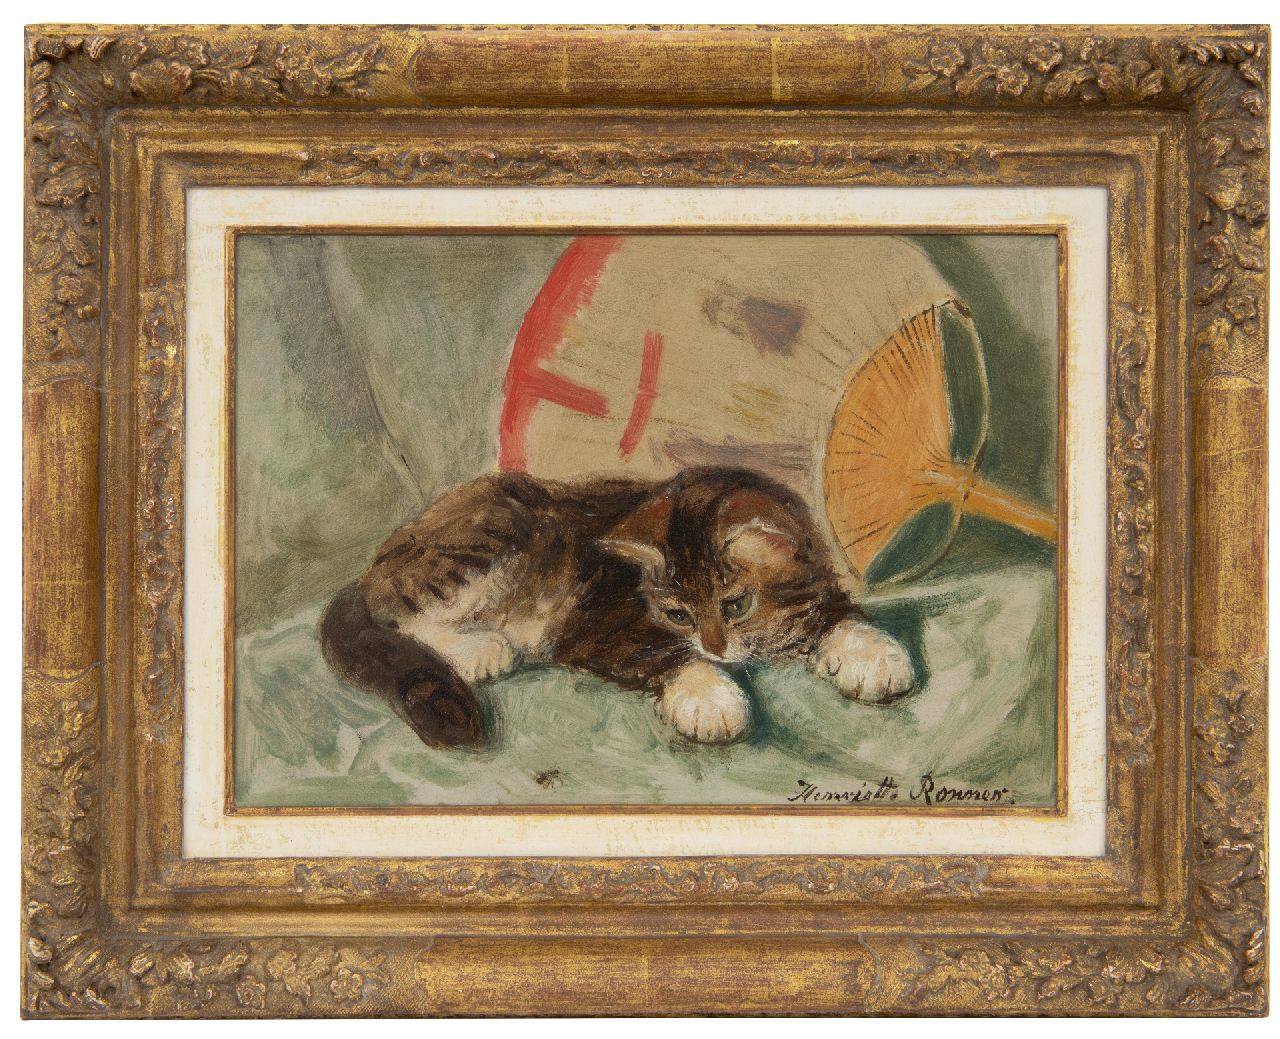 Ronner-Knip H.  | Henriette Ronner-Knip, Jong katje met een vlieg, olieverf op papier op board 21,8 x 31,2 cm, gesigneerd rechtsonder